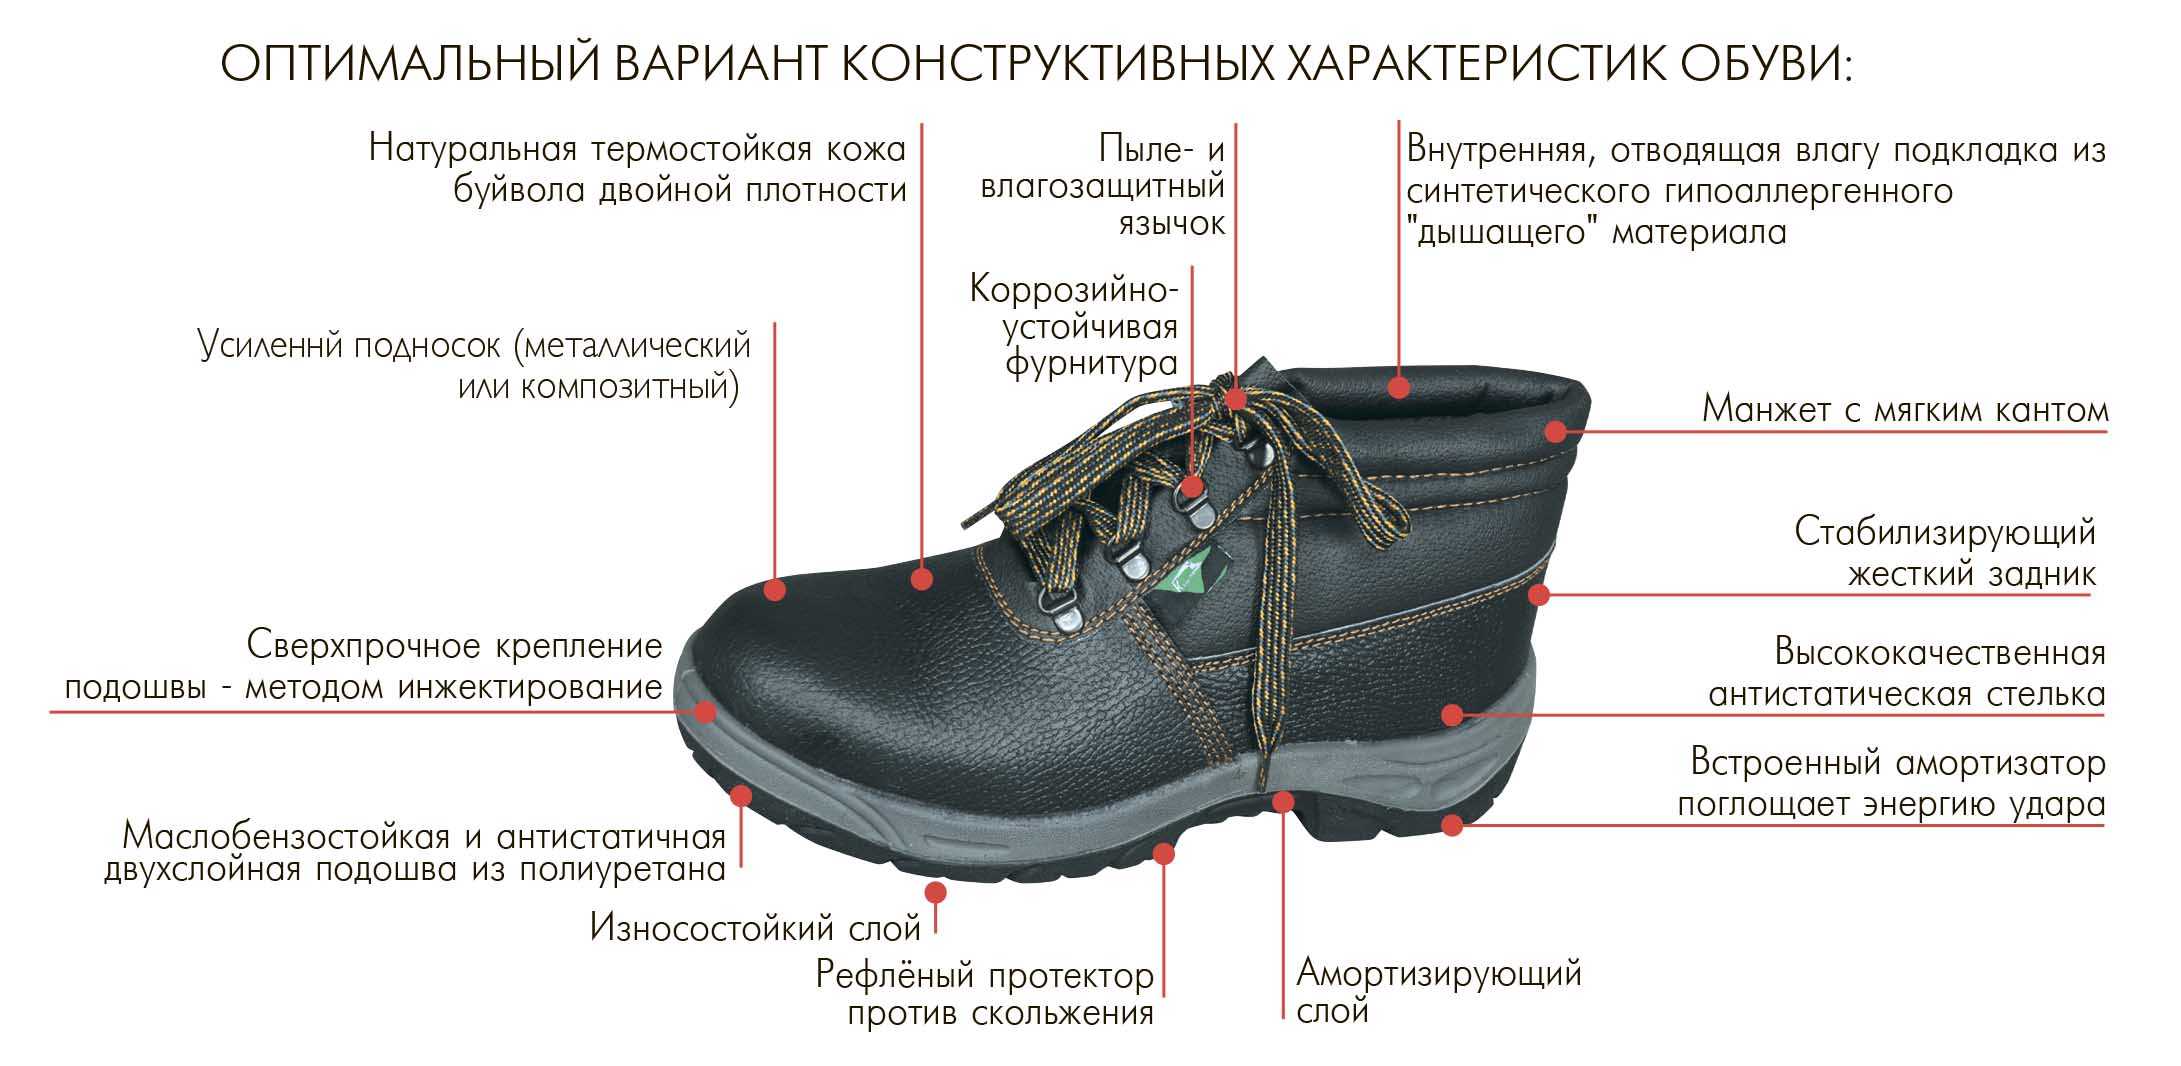 Свойство подошвы. Строение ботинка. Специальная обувь для рабочих. Ботинки для производства.